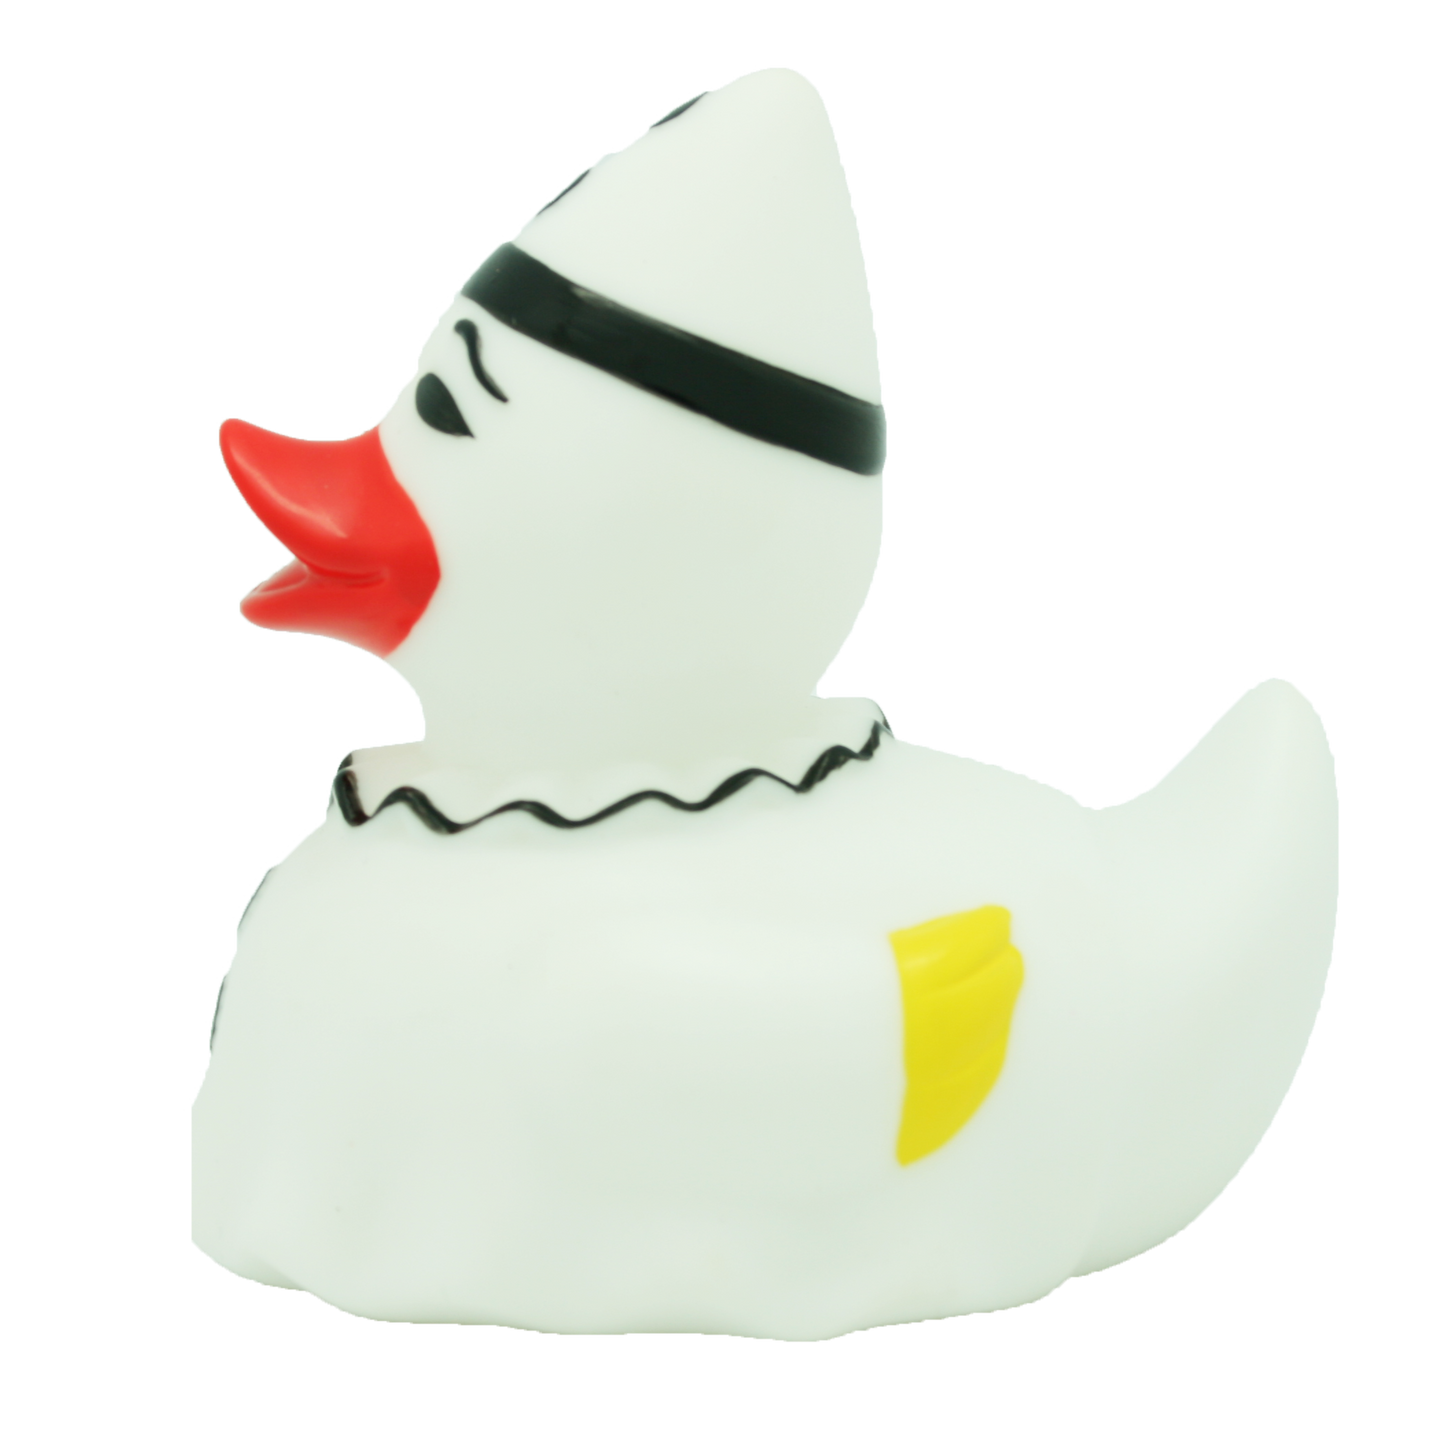 Pierrot Duck.